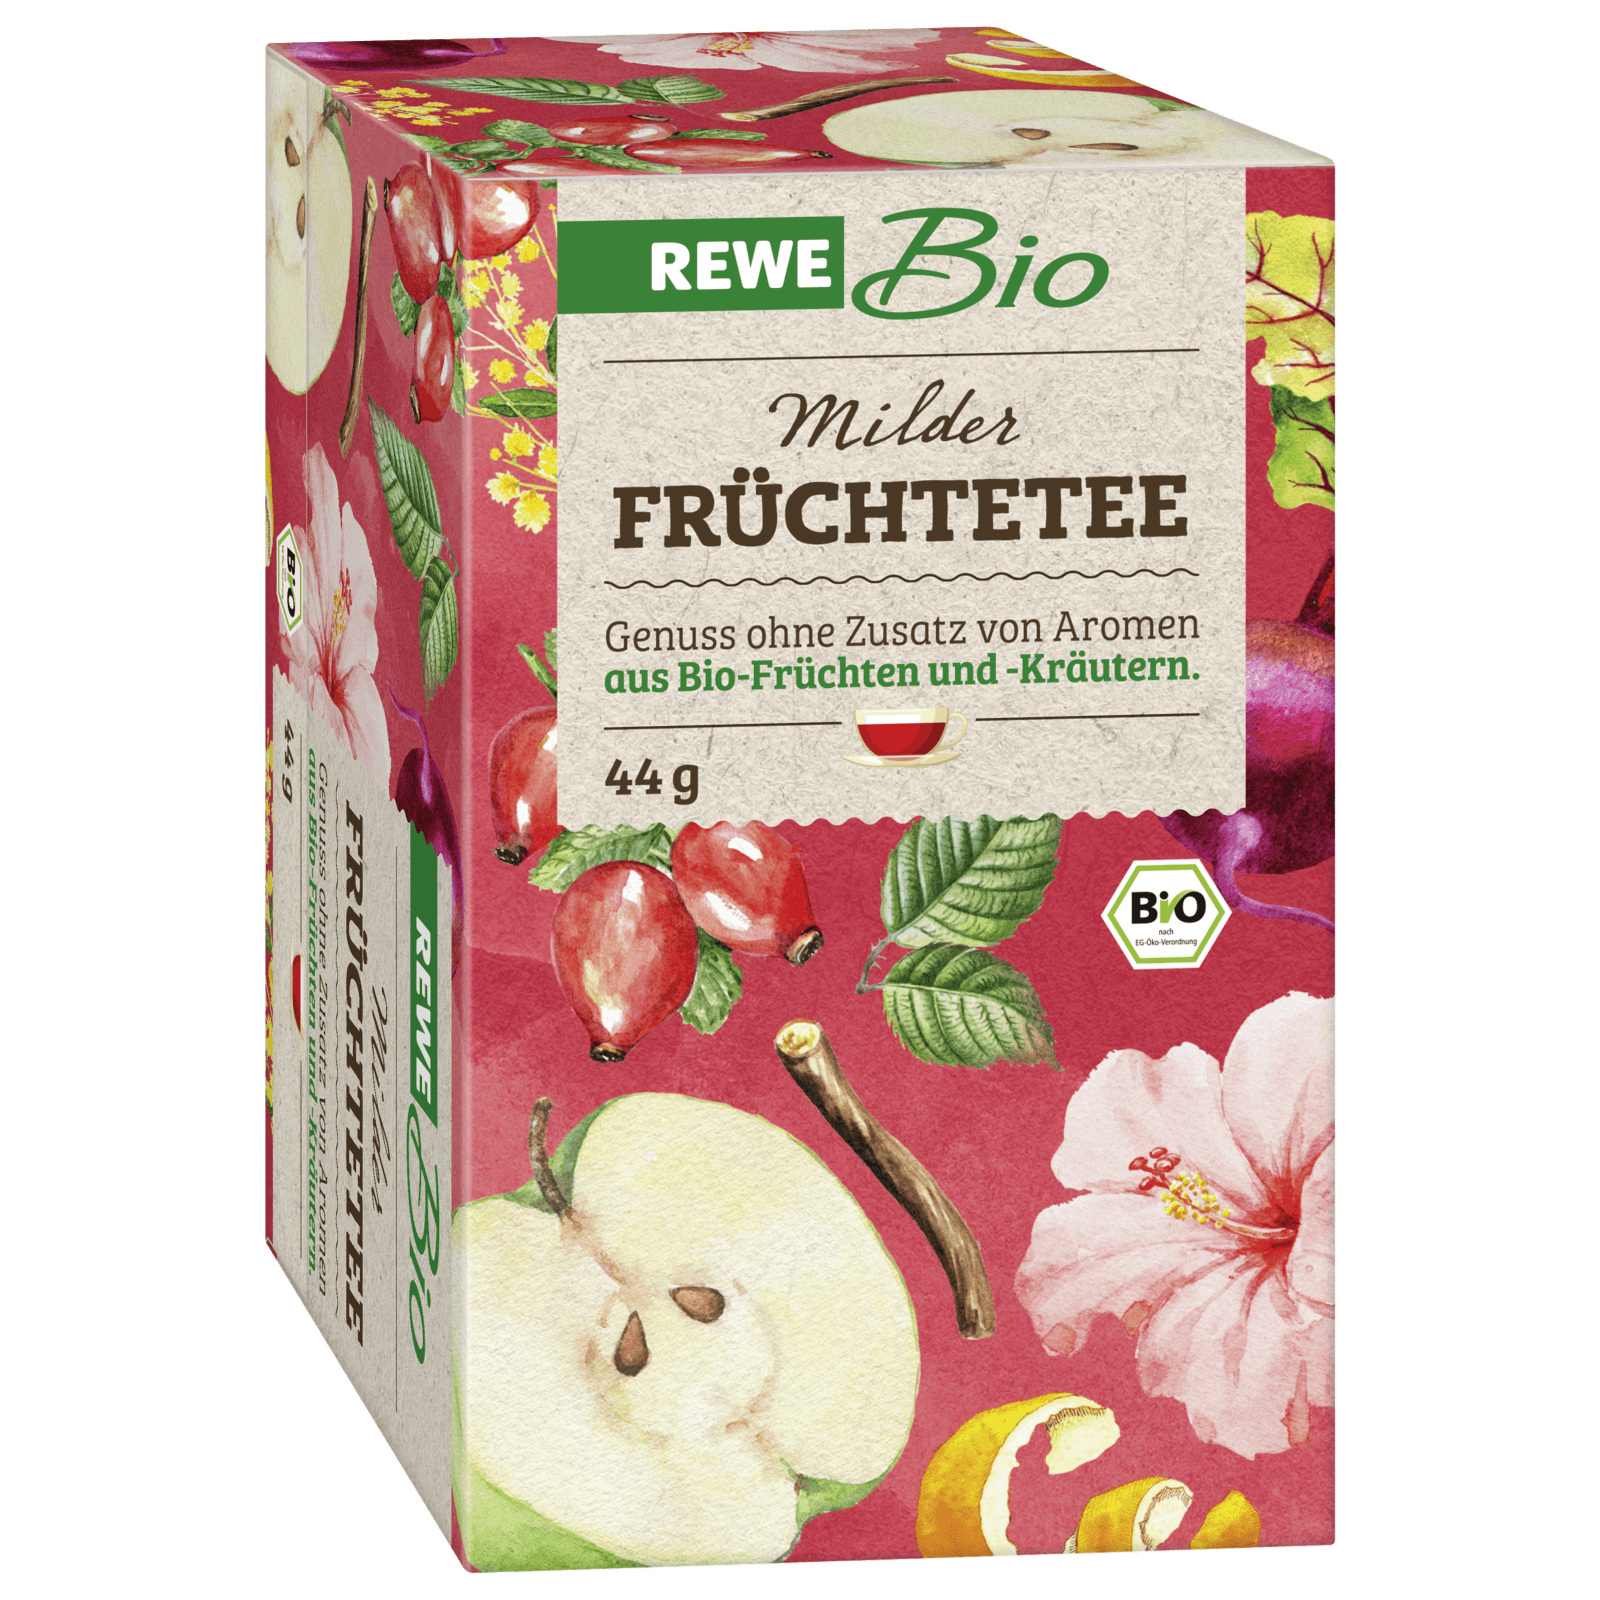 REWE Bio Milder Früchtetee 44g